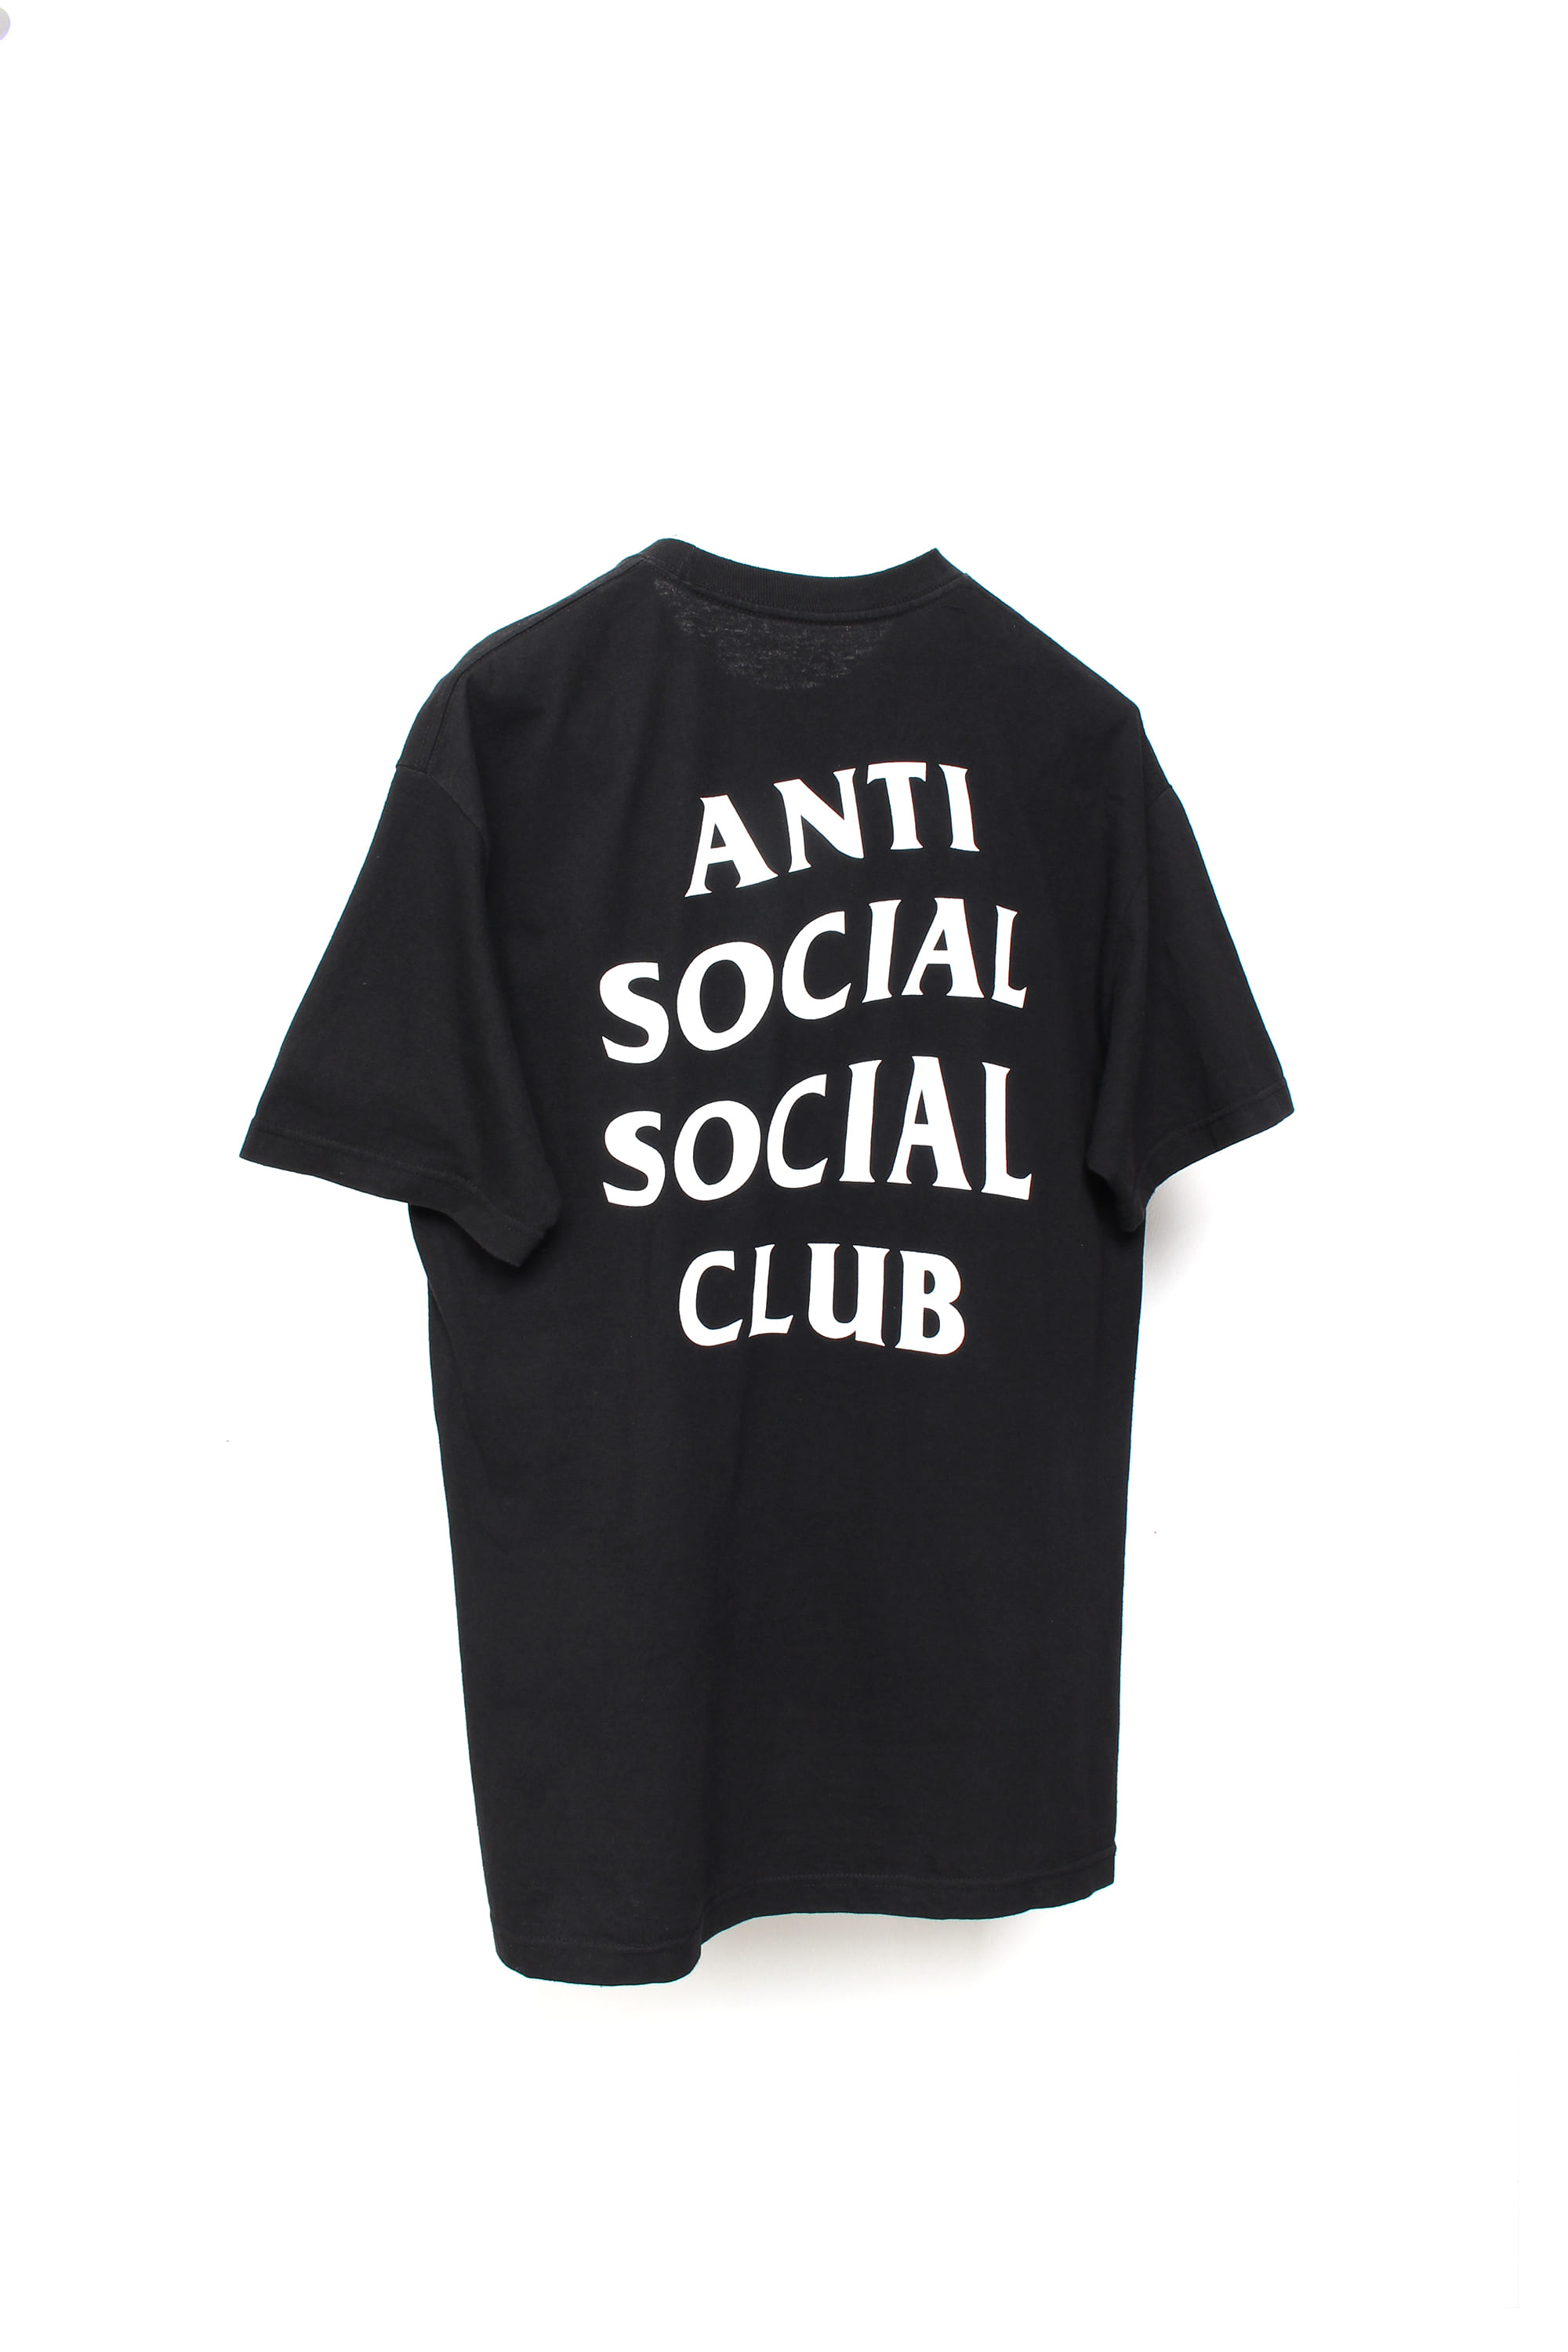 ANTI SOCIAL SOCIAL CLUB LOGO T